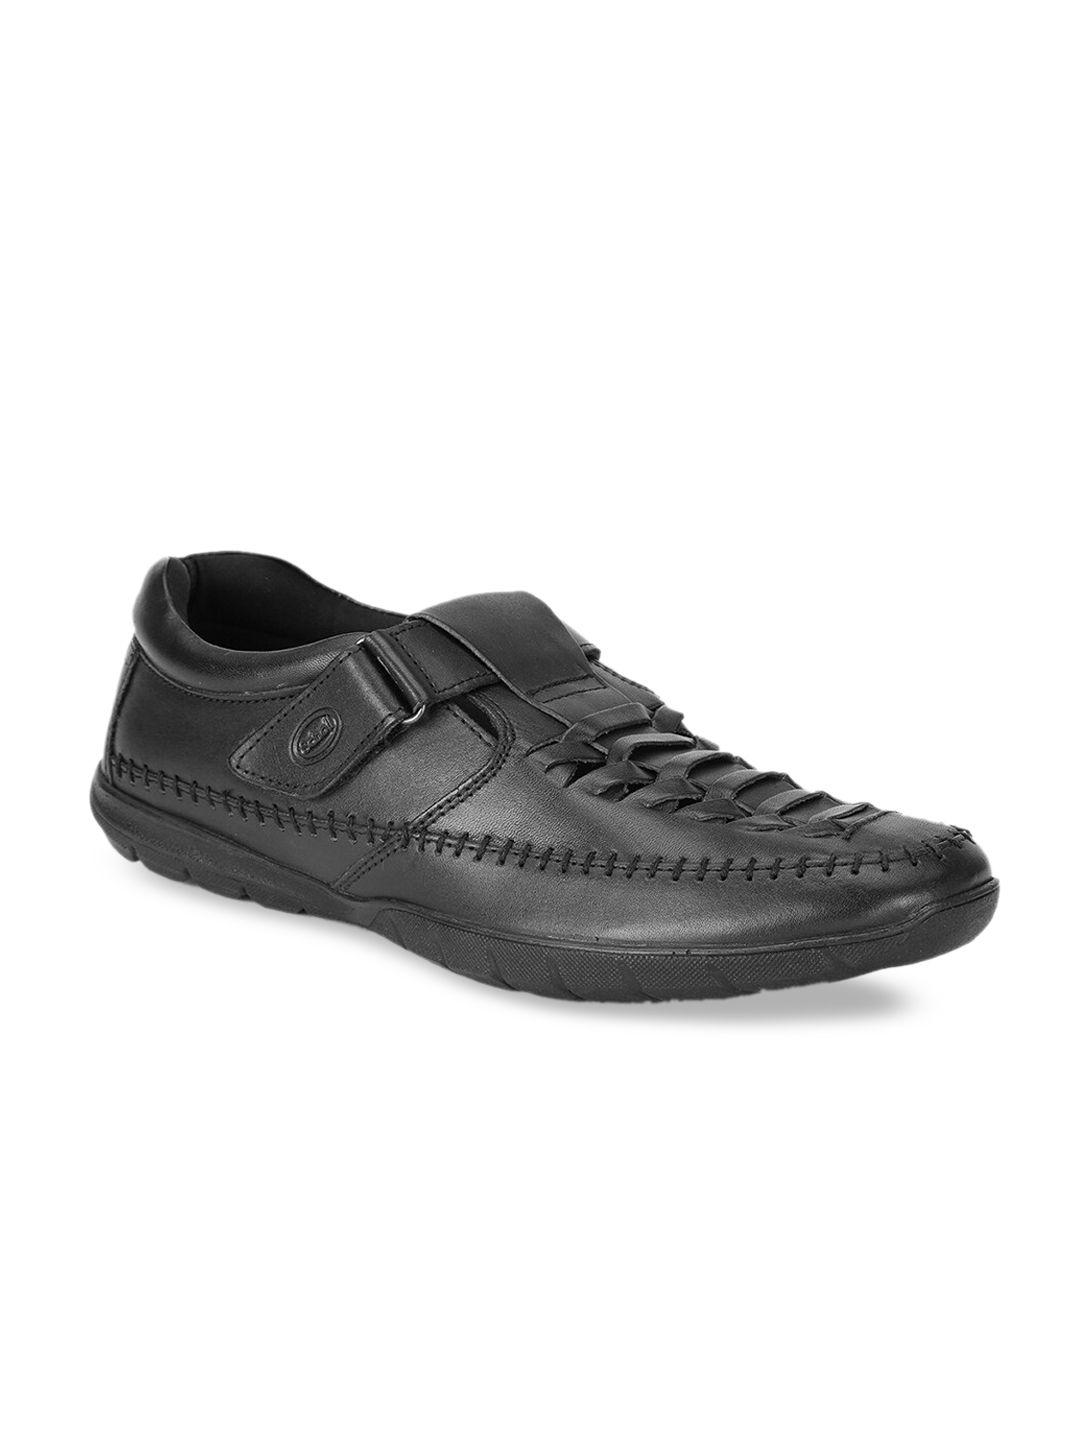 Scholl Men Black Leather Shoe-Style Sandals